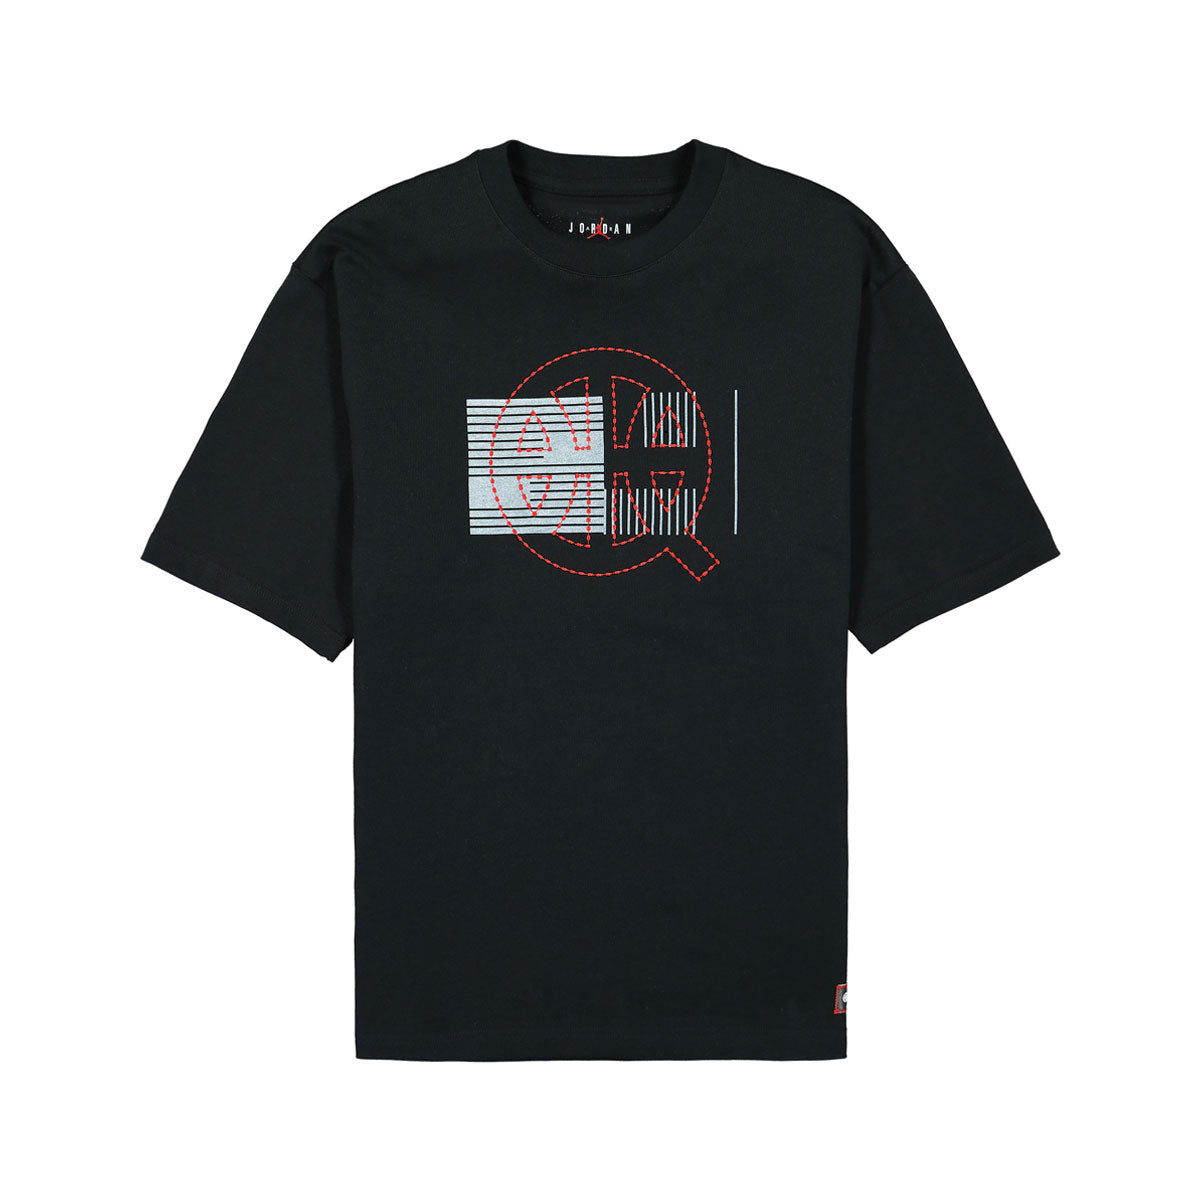 Nike Men's Jordan Quai 54 T-Shirt